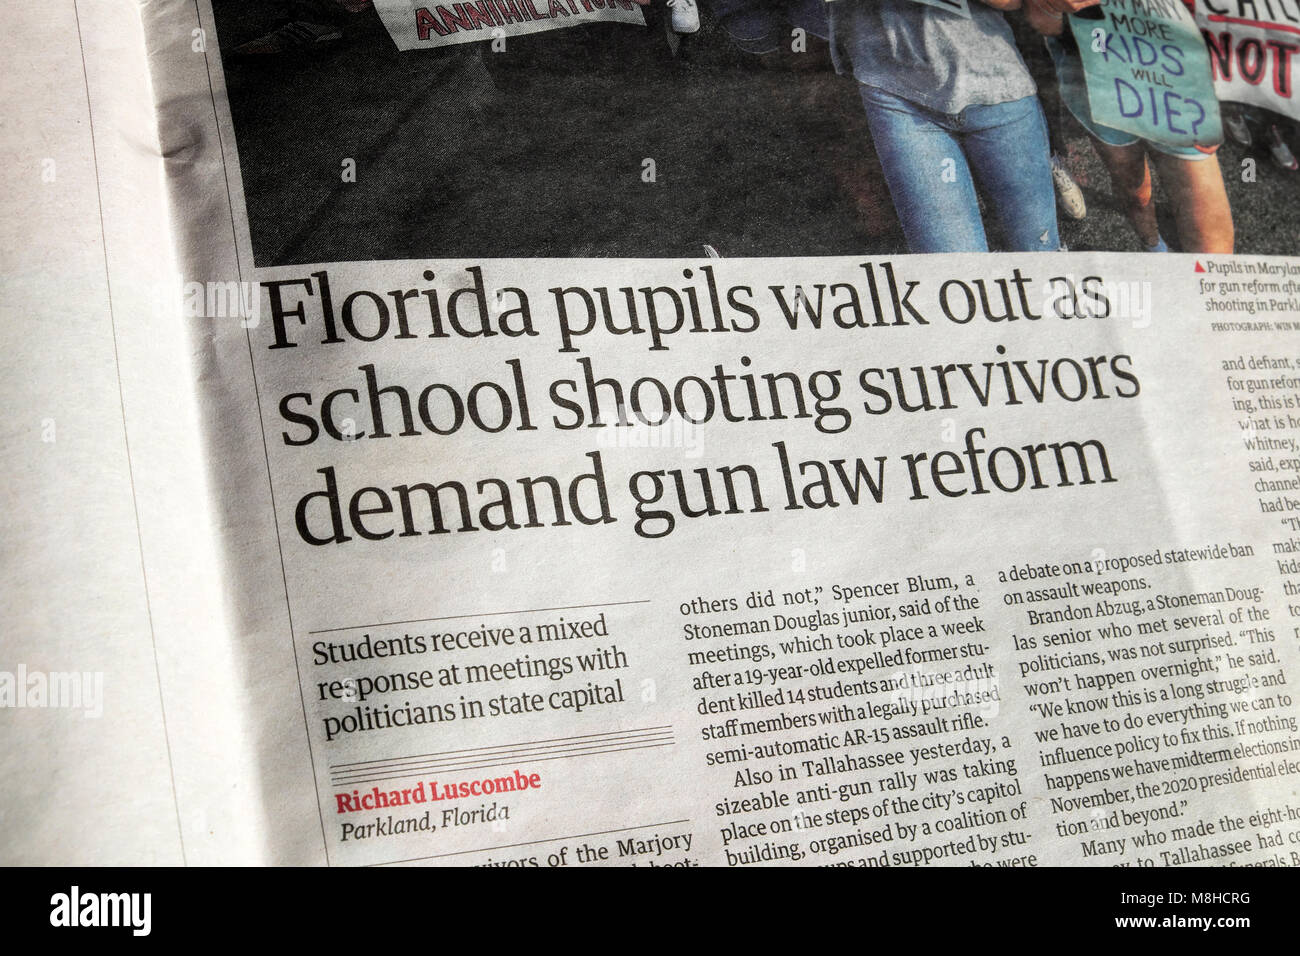 Guardian article "Florida élèves quittent l'école en tant que survivants de tir des armes à feu" de la demande de réforme du droit 2018 à Londres Angleterre Royaume-uni Banque D'Images